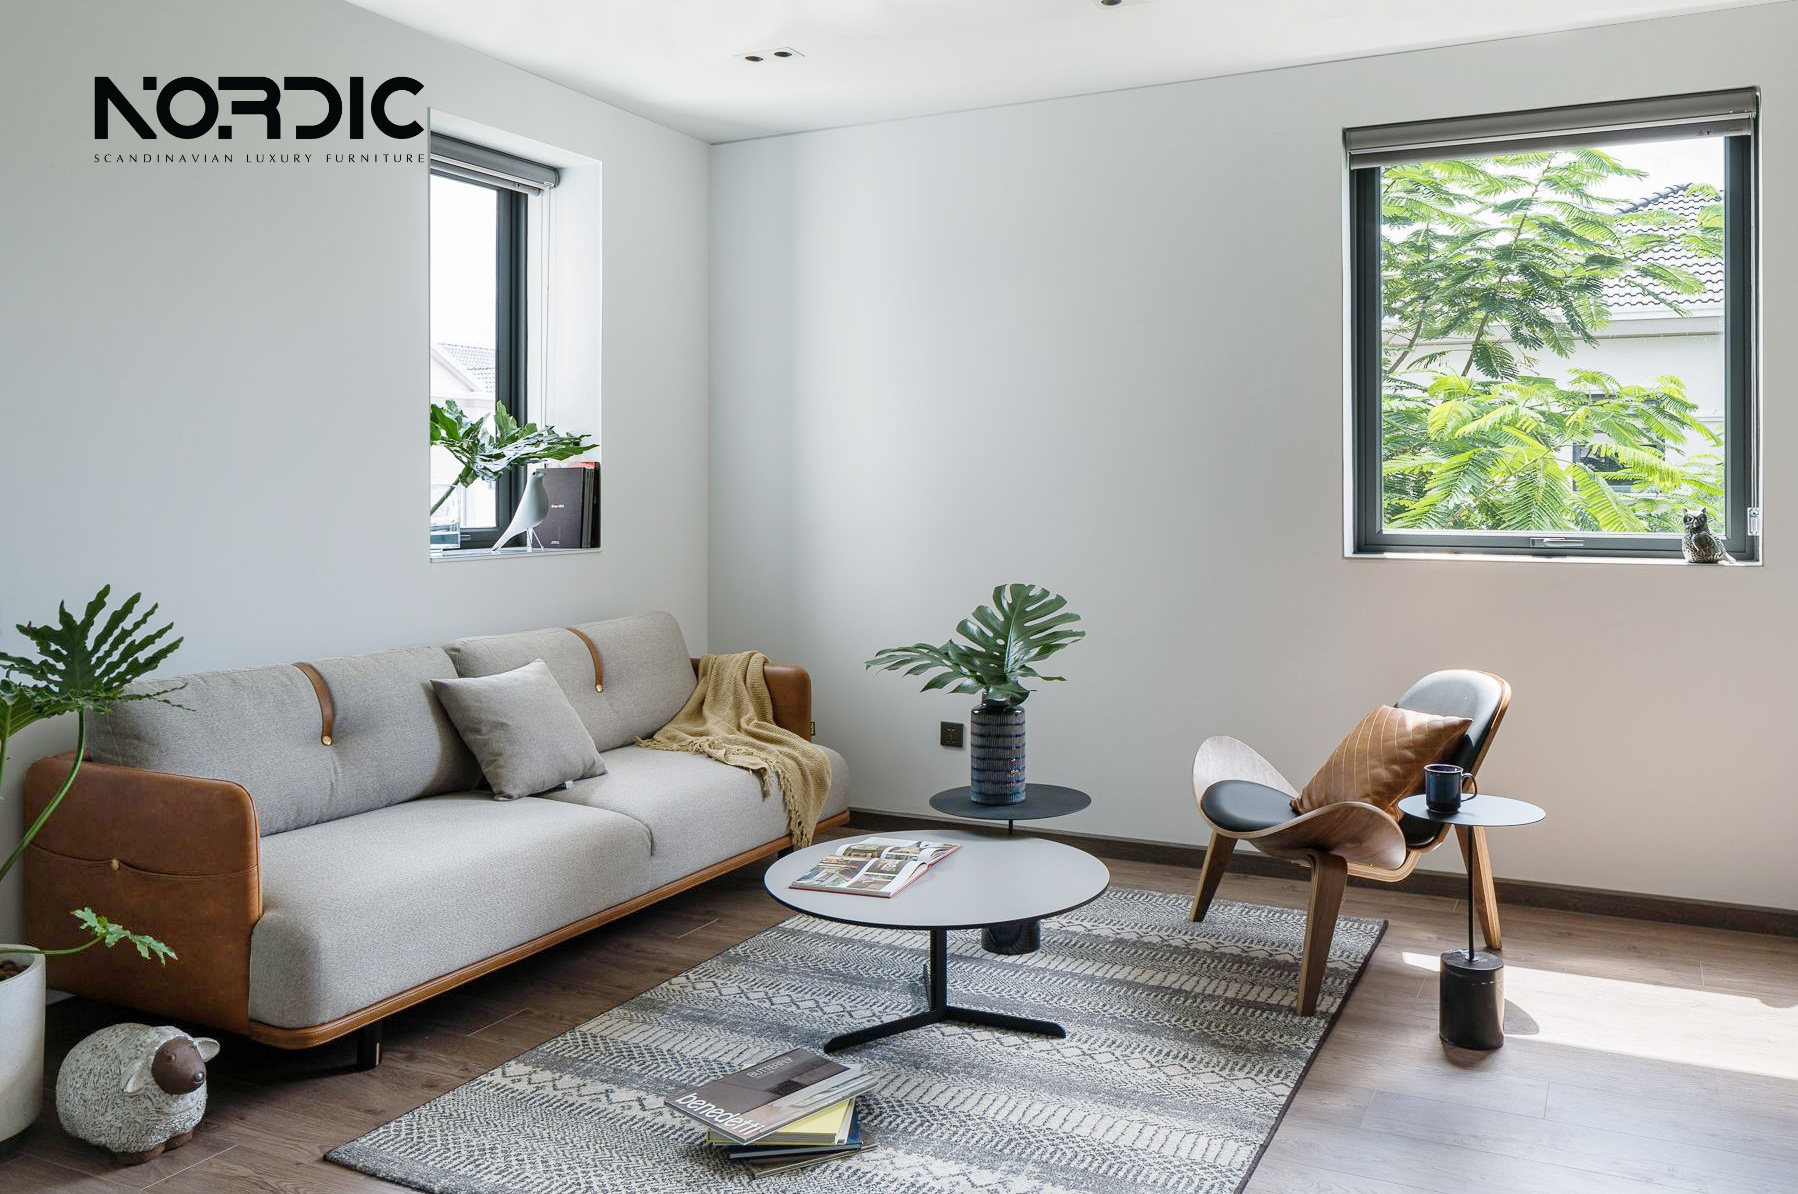 Phong cách thiết kế nội thất Scandinavian được Nordic lấy cảm hứng vào để thiết kế & sản xuất sản phẩm của mình. Trong căn hộ này, khashc hàng đã tin tưởng và lựa chọn sofa Semina - Best Seller của Nordic